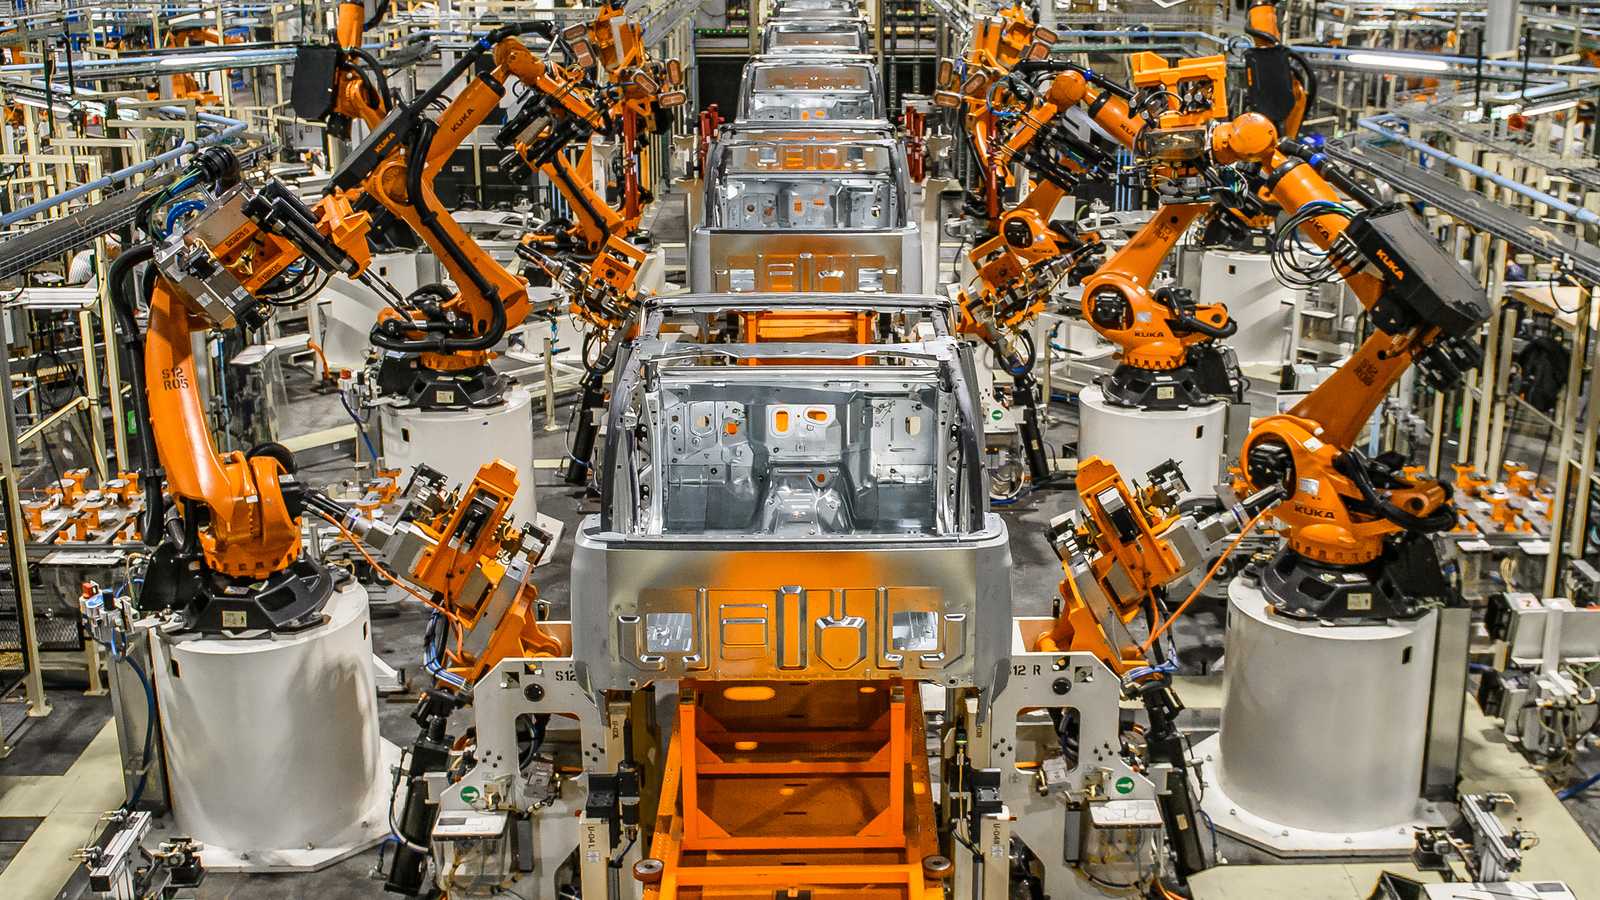 Invertir en robótica: cómo, por qué, empresas de robótica, ventajas y desventajas